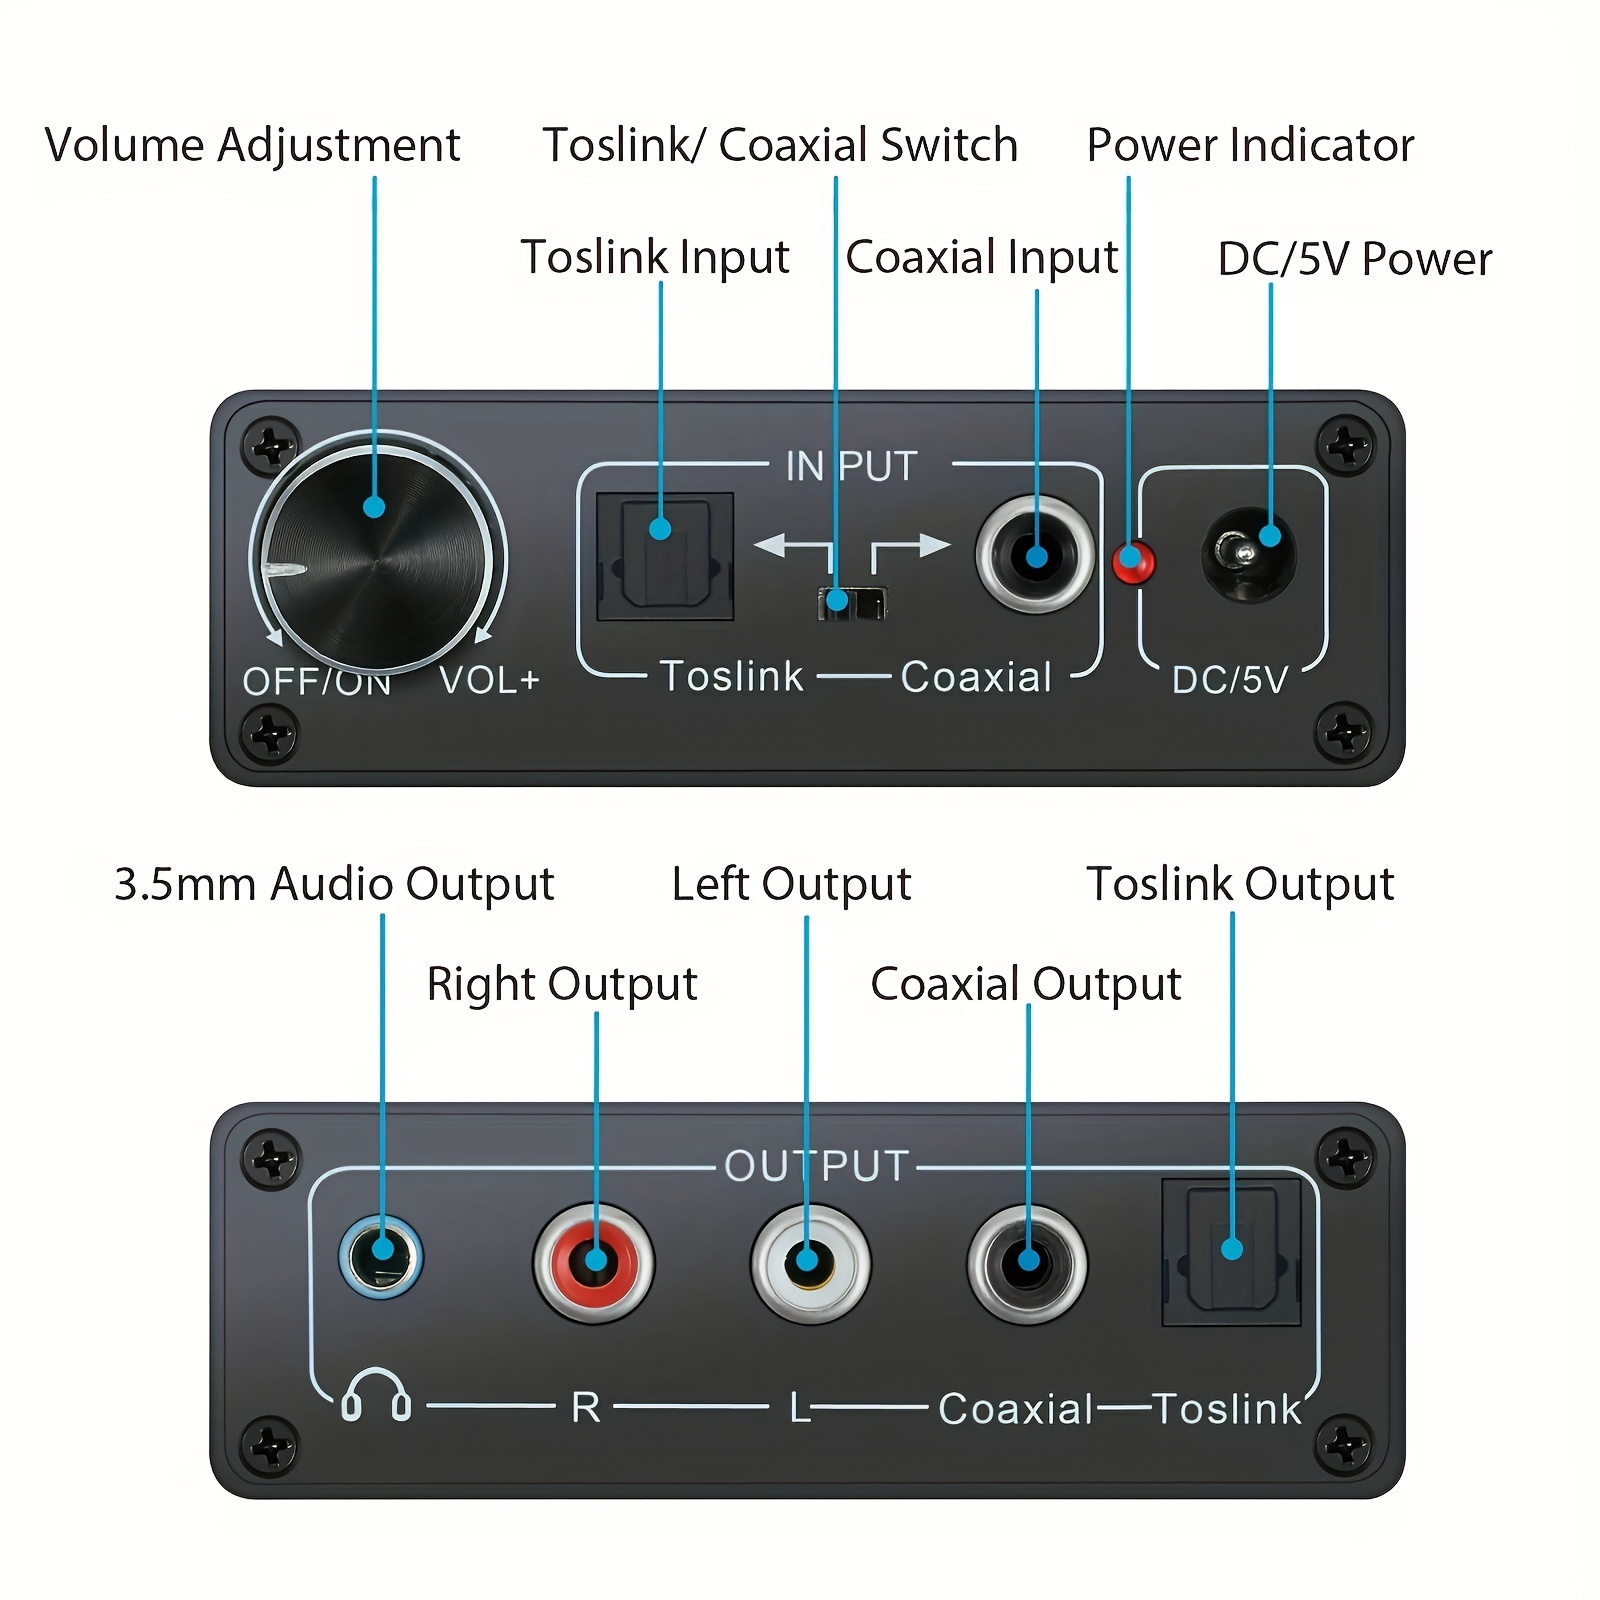 Convertidor de audio digital a analógico de 192 KHz con ajuste de graves y  volumen, SPDIF/óptico/Toslink/coaxial a analógico estéreo L/R RCA y